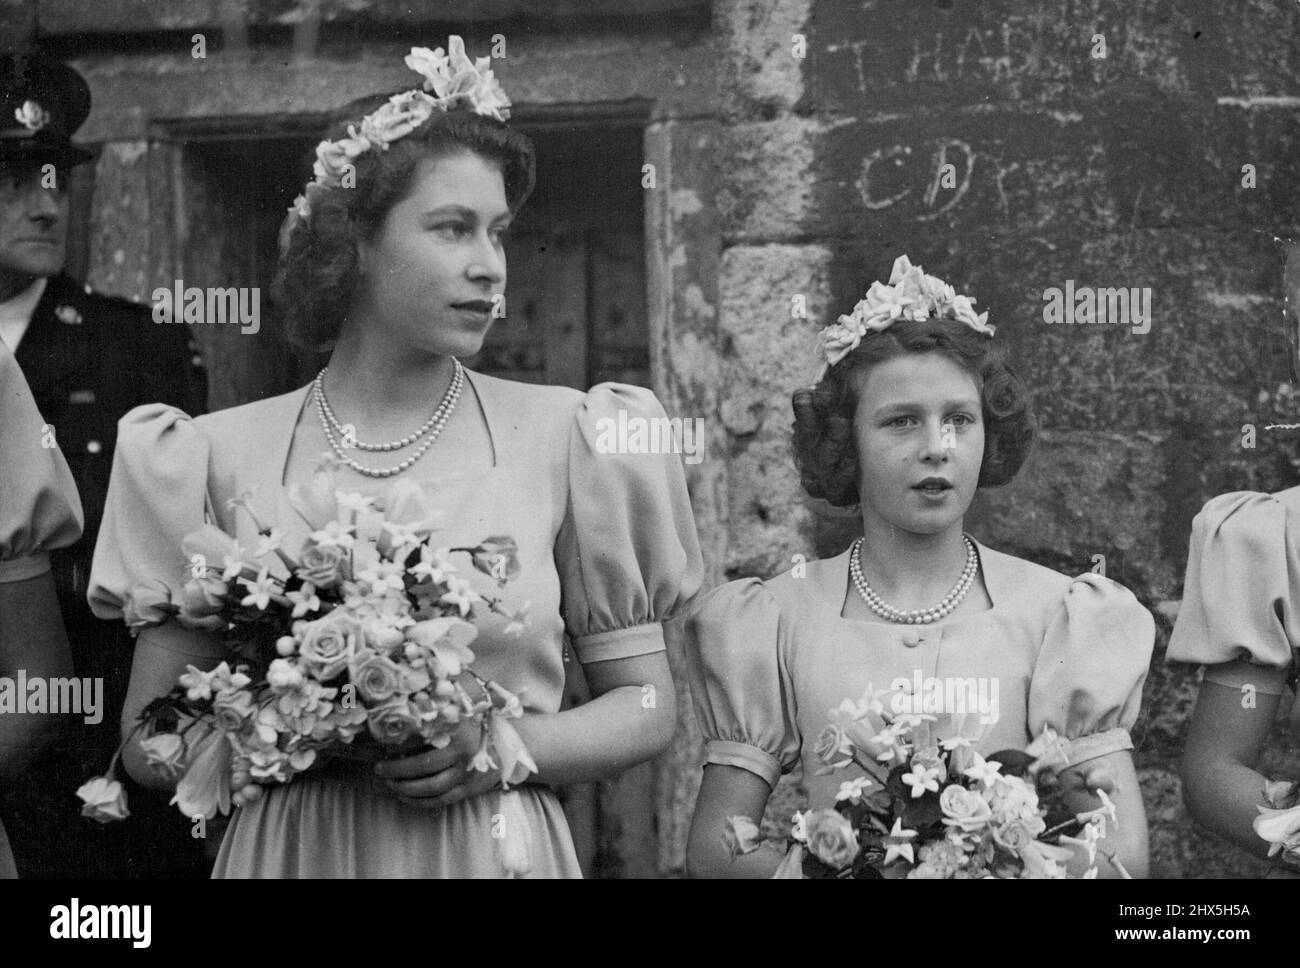 Trois princesses sont des bridesmaids à l'abbaye de Romsey Wedding -- Un gros plan de la princesse Elizabeth (à gauche) et de la princesse Alexander de Kent, des bridesmaids à l'abbaye de mariage Romsey cet après-midi (samedi). L'ancienne ville de Romsey, dans la New Forest, Hampshire, était ***** À jour (samedi). Des milliers de personnes sont venues de loin pour voir l'honorable Patricia Mountbatten, fille de 22 ans du vicomte Mountbatten de Birmanie, mariée au capitaine le Lord Brabourne, les coldstream Guards, à l'abbaye de Romsey. 26 octobre 1946. Banque D'Images